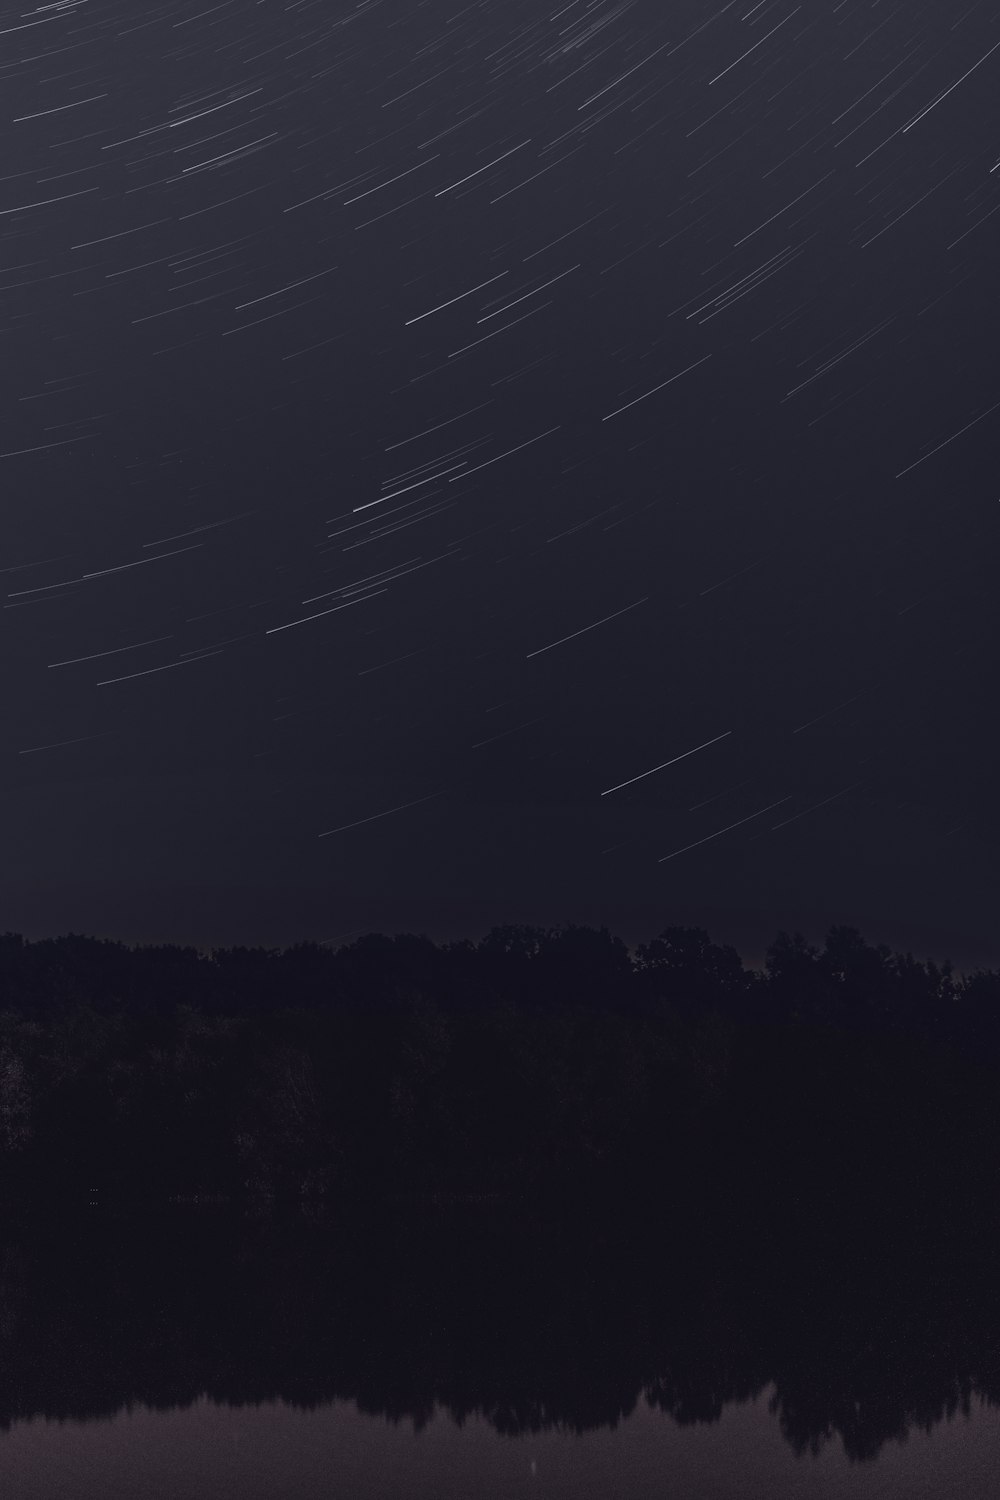 Zeitrafferfotografie von Sternen bei Nacht